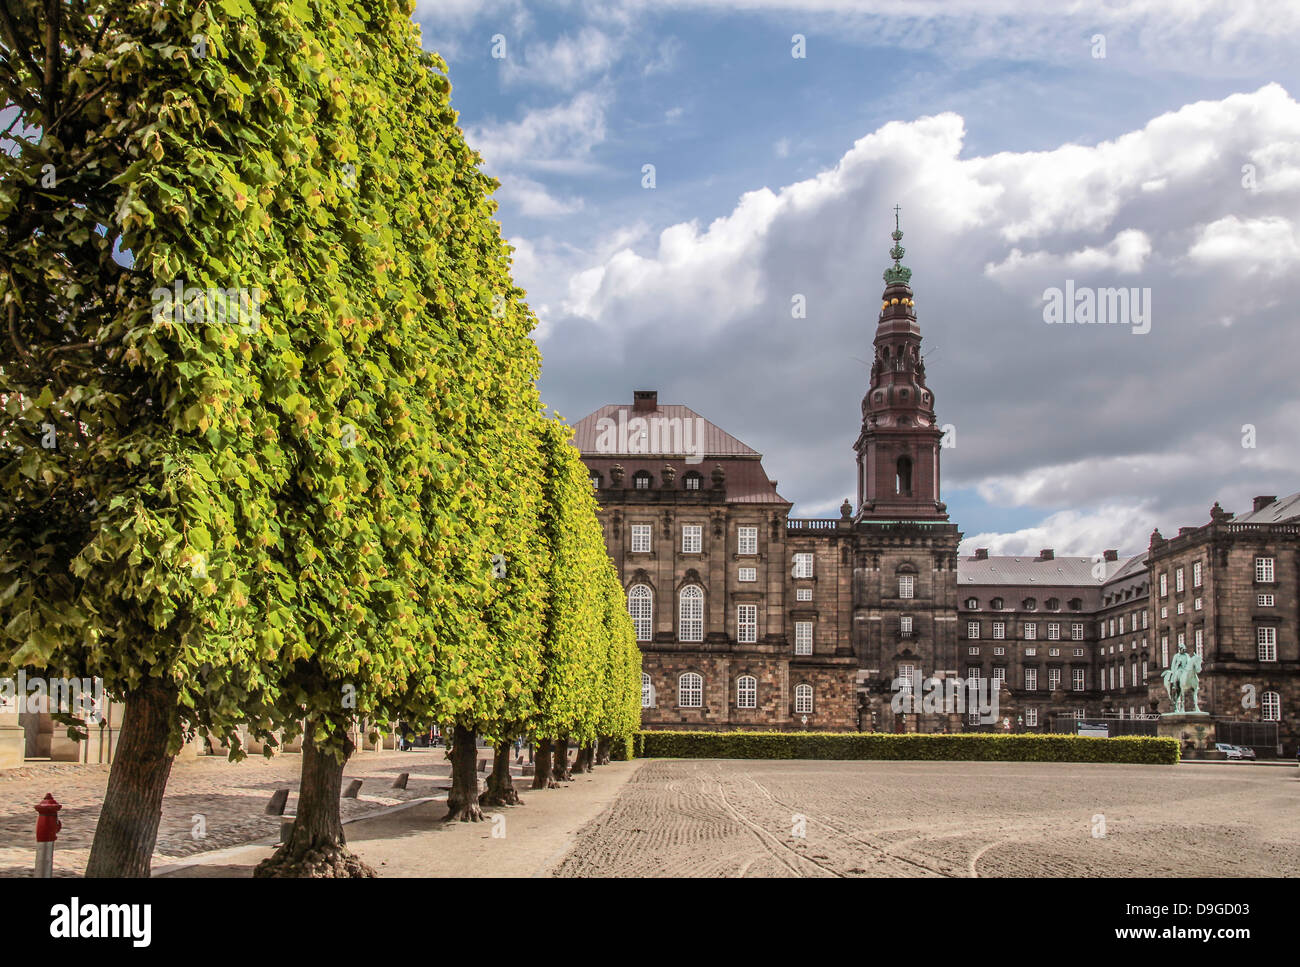 Christiansborg Castle in the center of Copenhagen, Denmark Stock Photo